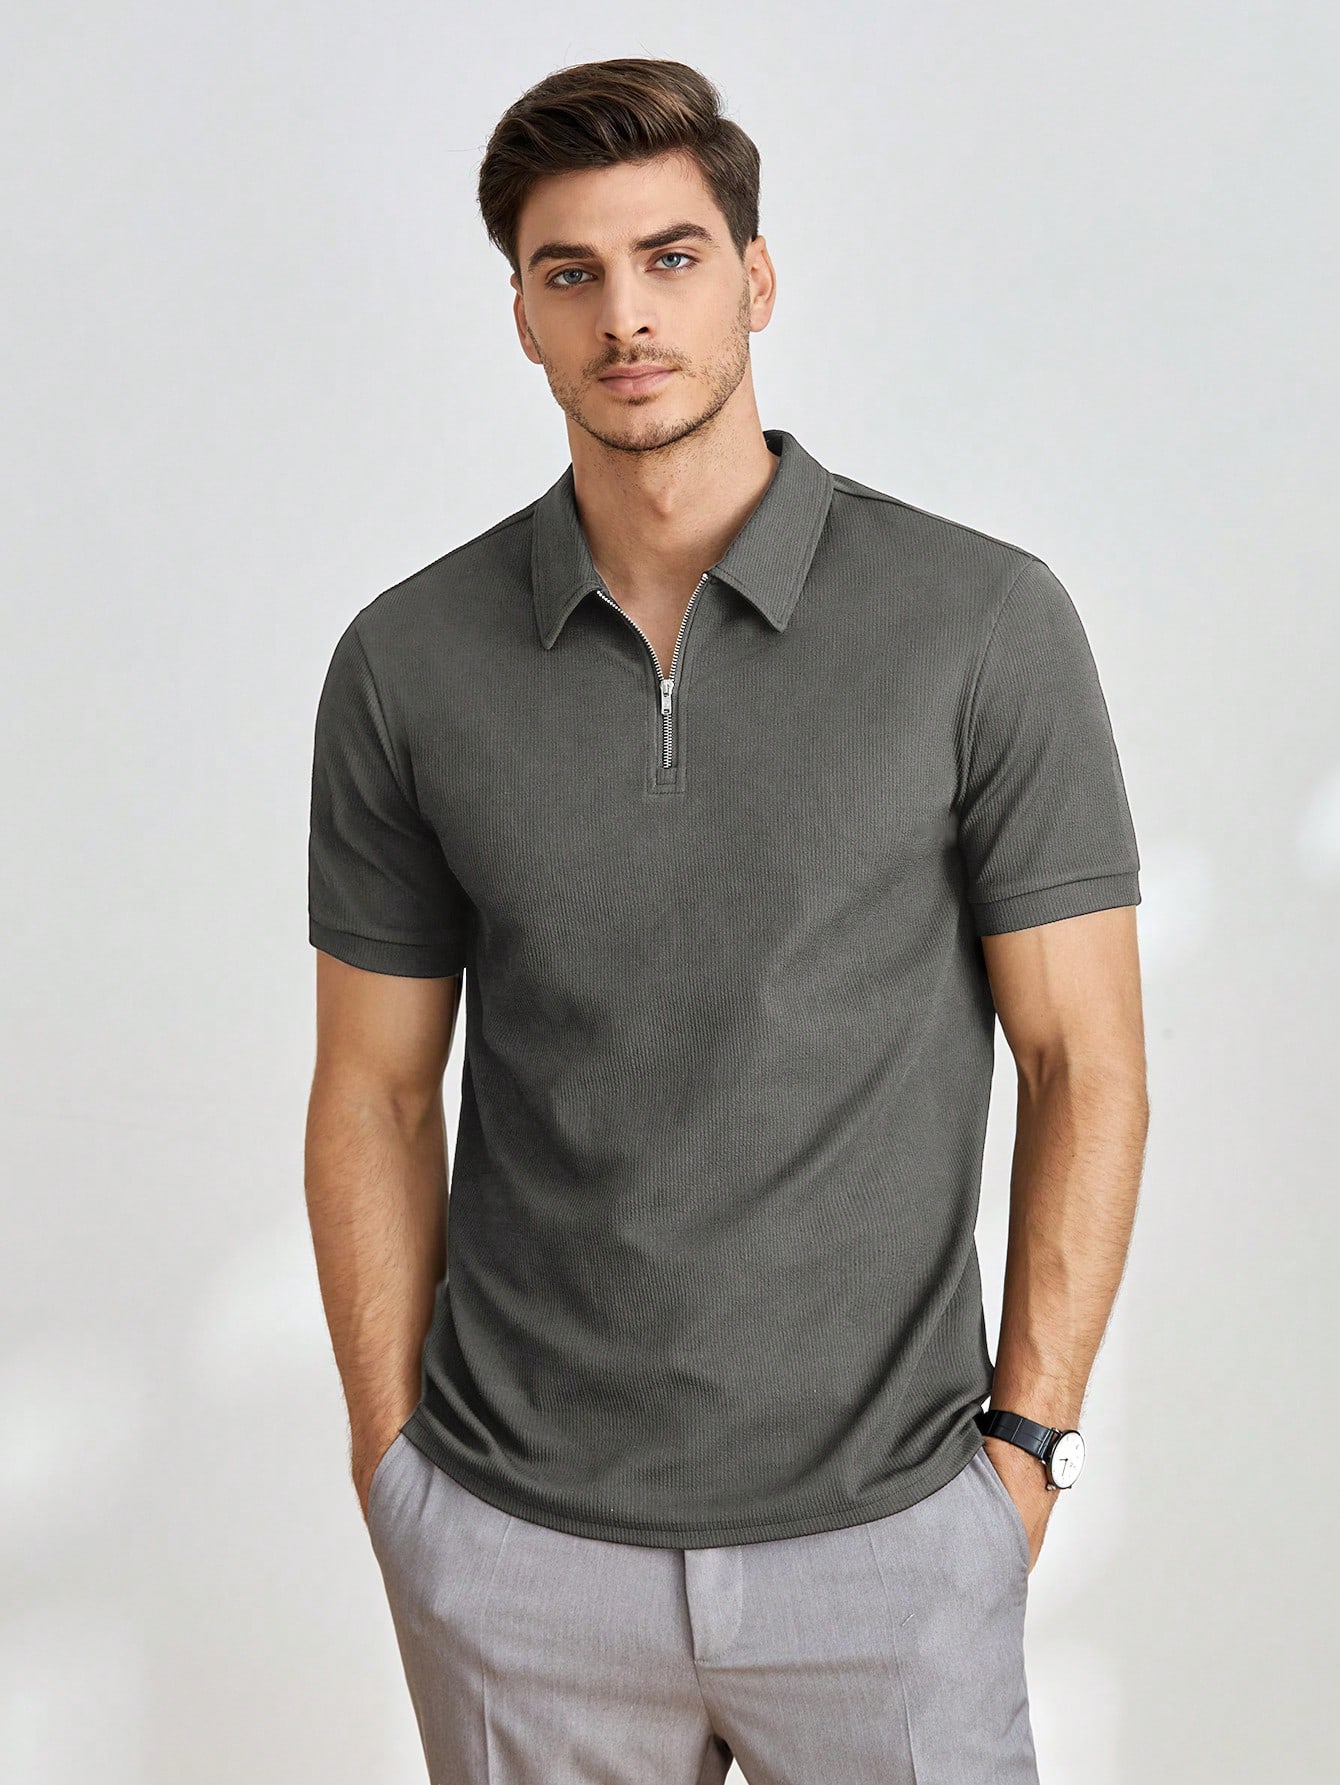 Мужская однотонная рубашка-поло с короткими рукавами Manfinity Homme, серый